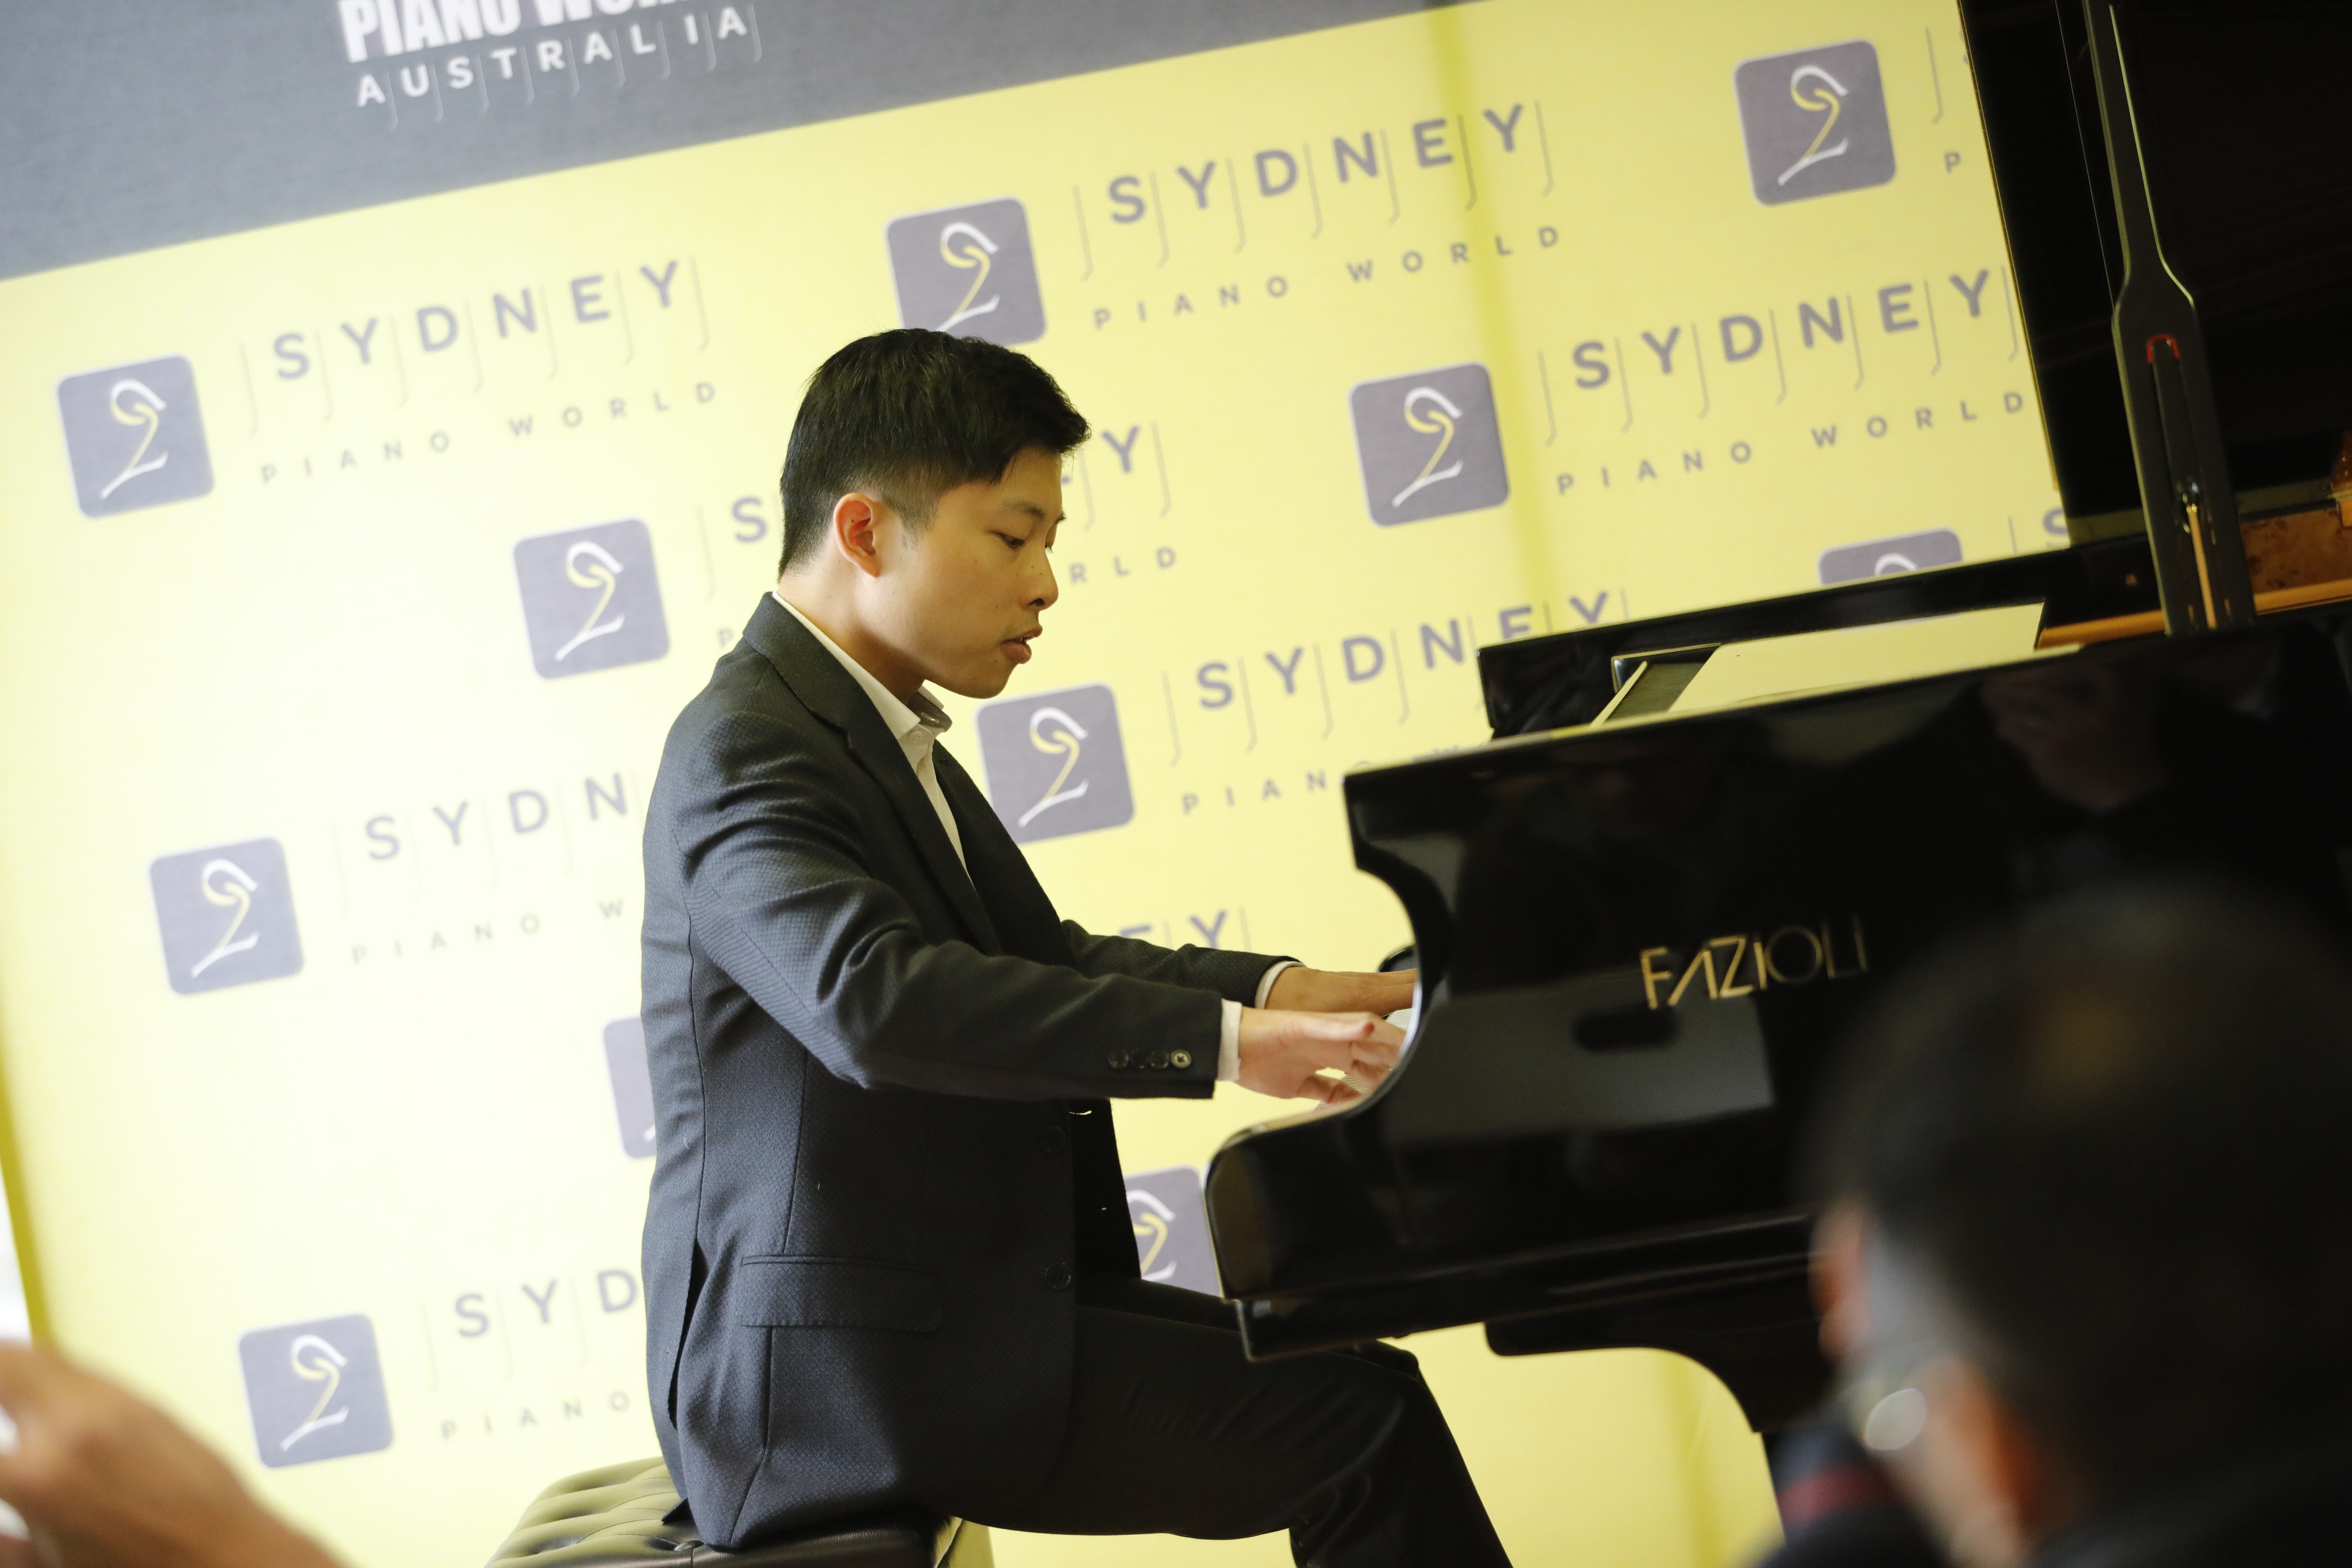 1 4 加拿大华裔钢琴家Avan Yu空降悉尼,挑战镇店之宝FAZIOLI